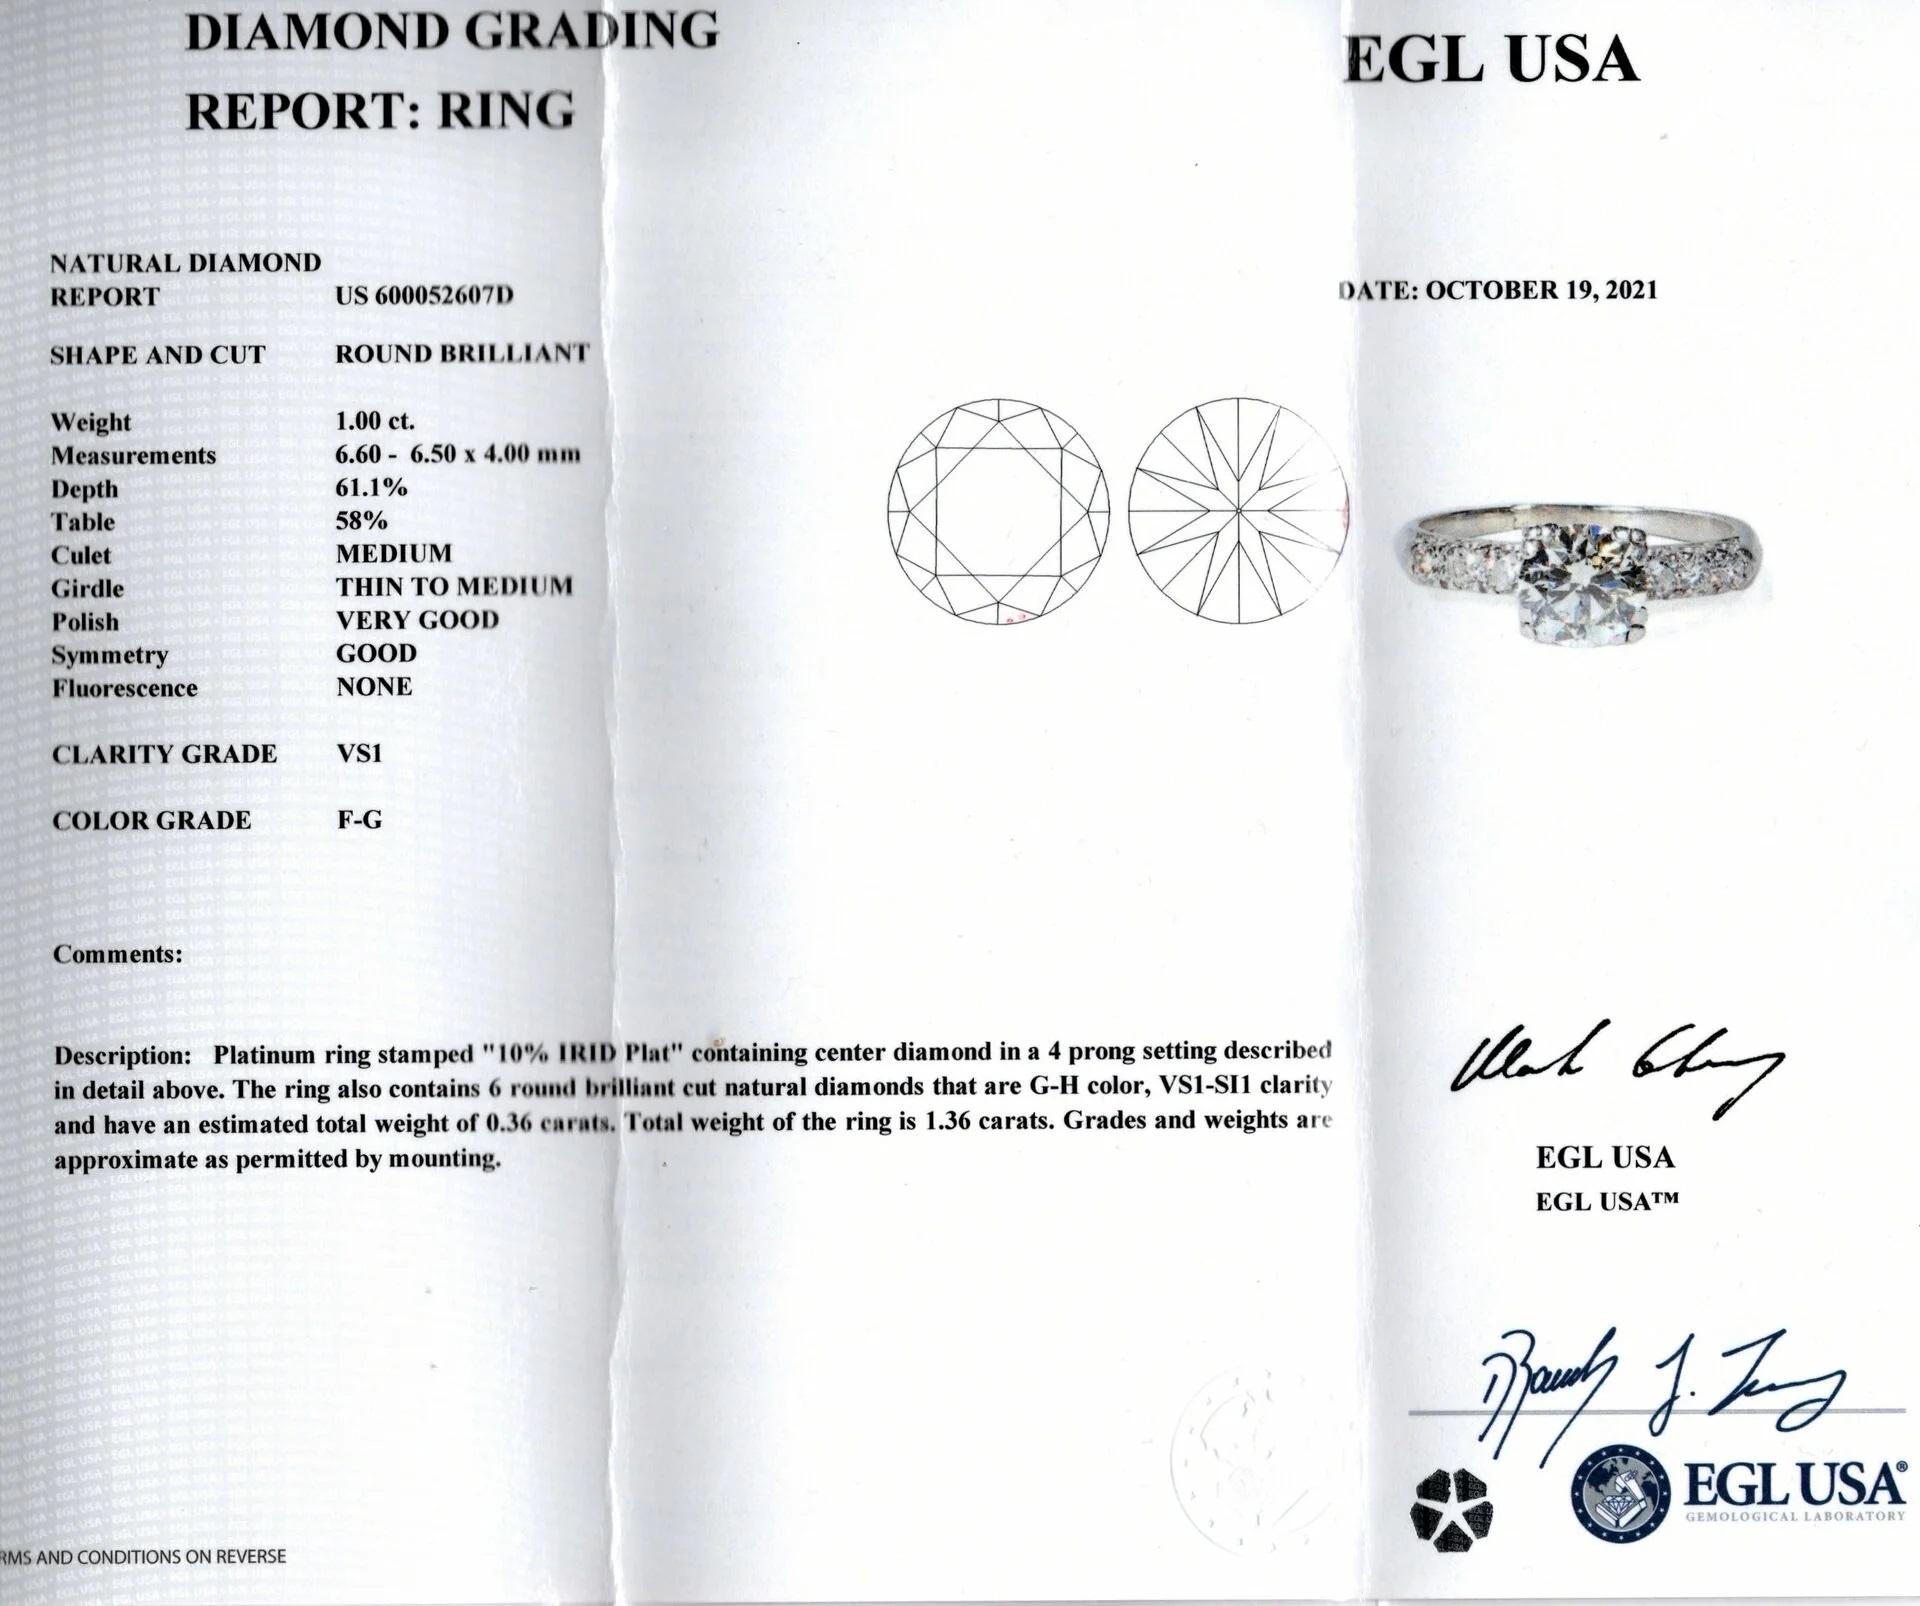  Der klassische Diamantring hat ein bewährtes Design und ist mit einem sehr hochwertigen 1-Karat-Diamanten besetzt!

Höhepunkte:

- 1,00ct natürlicher Diamant in der Mitte

- Zertifiziert durch EGL-USA

- Hohe Qualität, strahlend weiß und